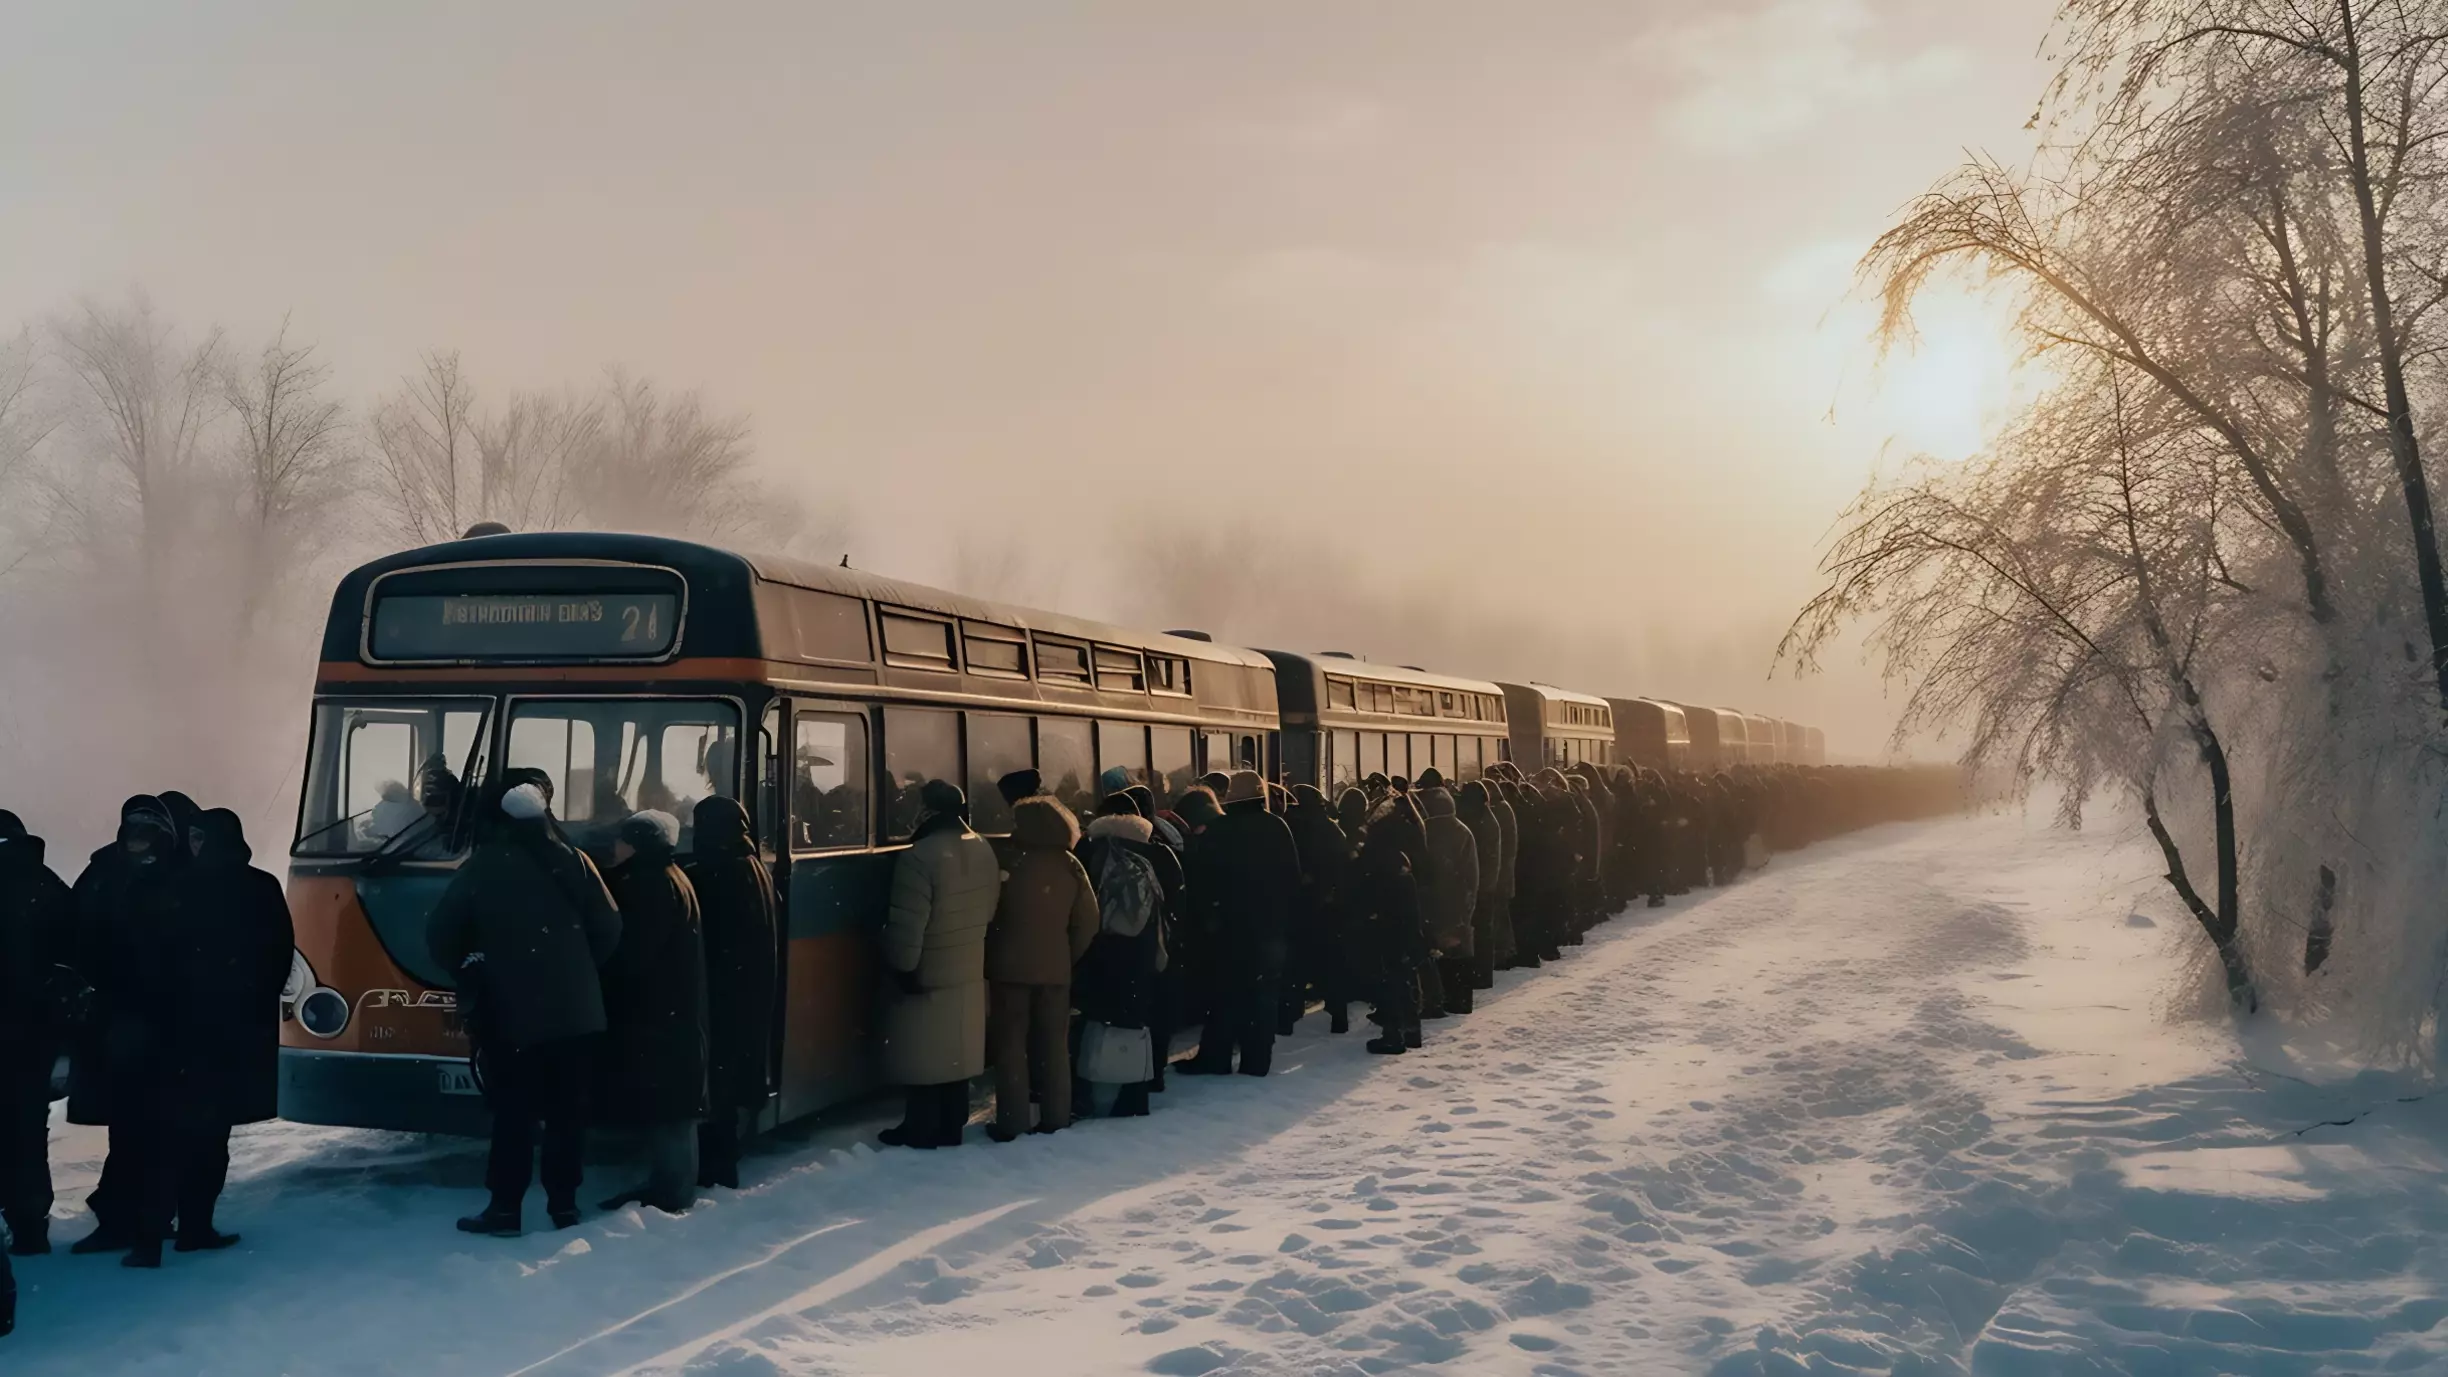 Мэрия Сургута объяснила, почему люди ждали автобус полтора часа на морозе